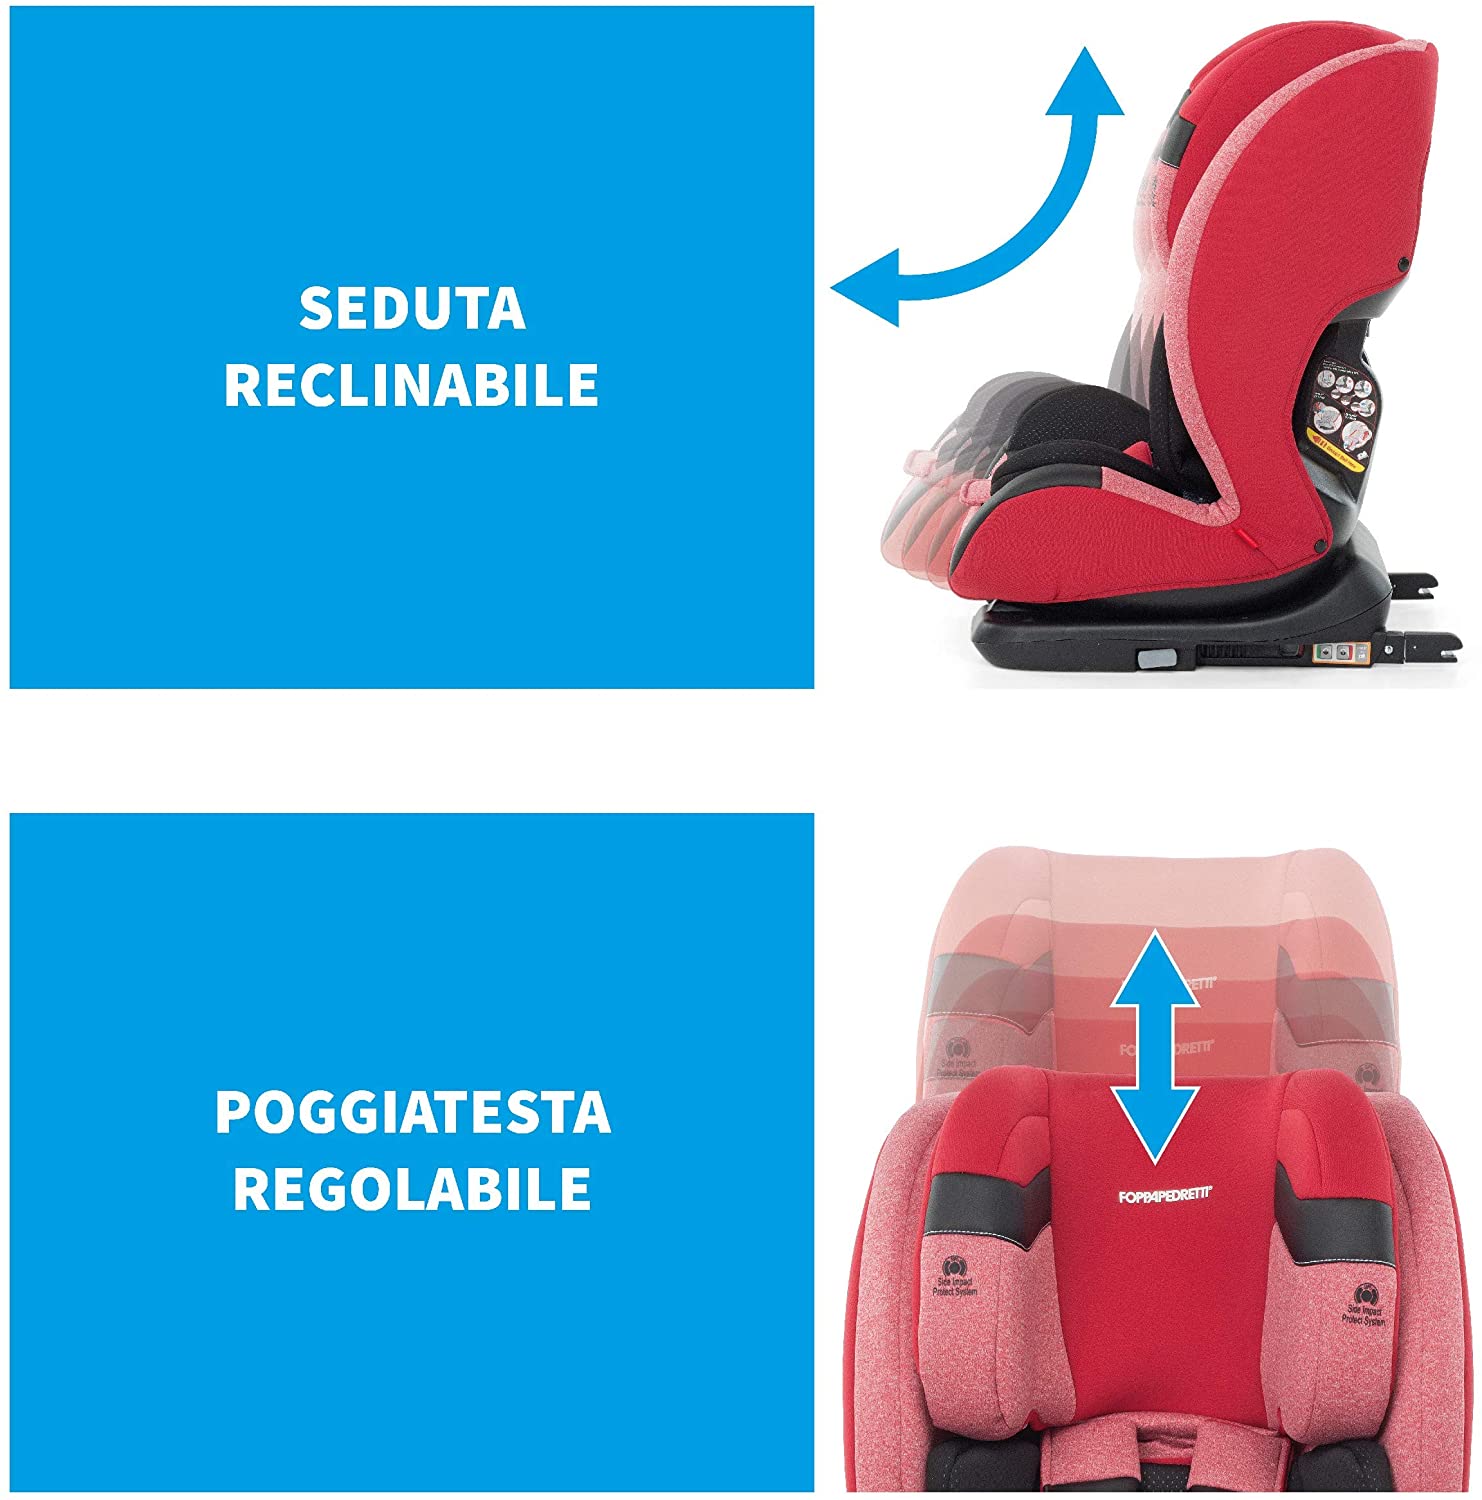 Seggiolino auto Re-Klino Fix 9 / 36 kg FoppaPedretti cherry - Bimbibelli -  articoli e giocattoli per bambini - passeggini e culle